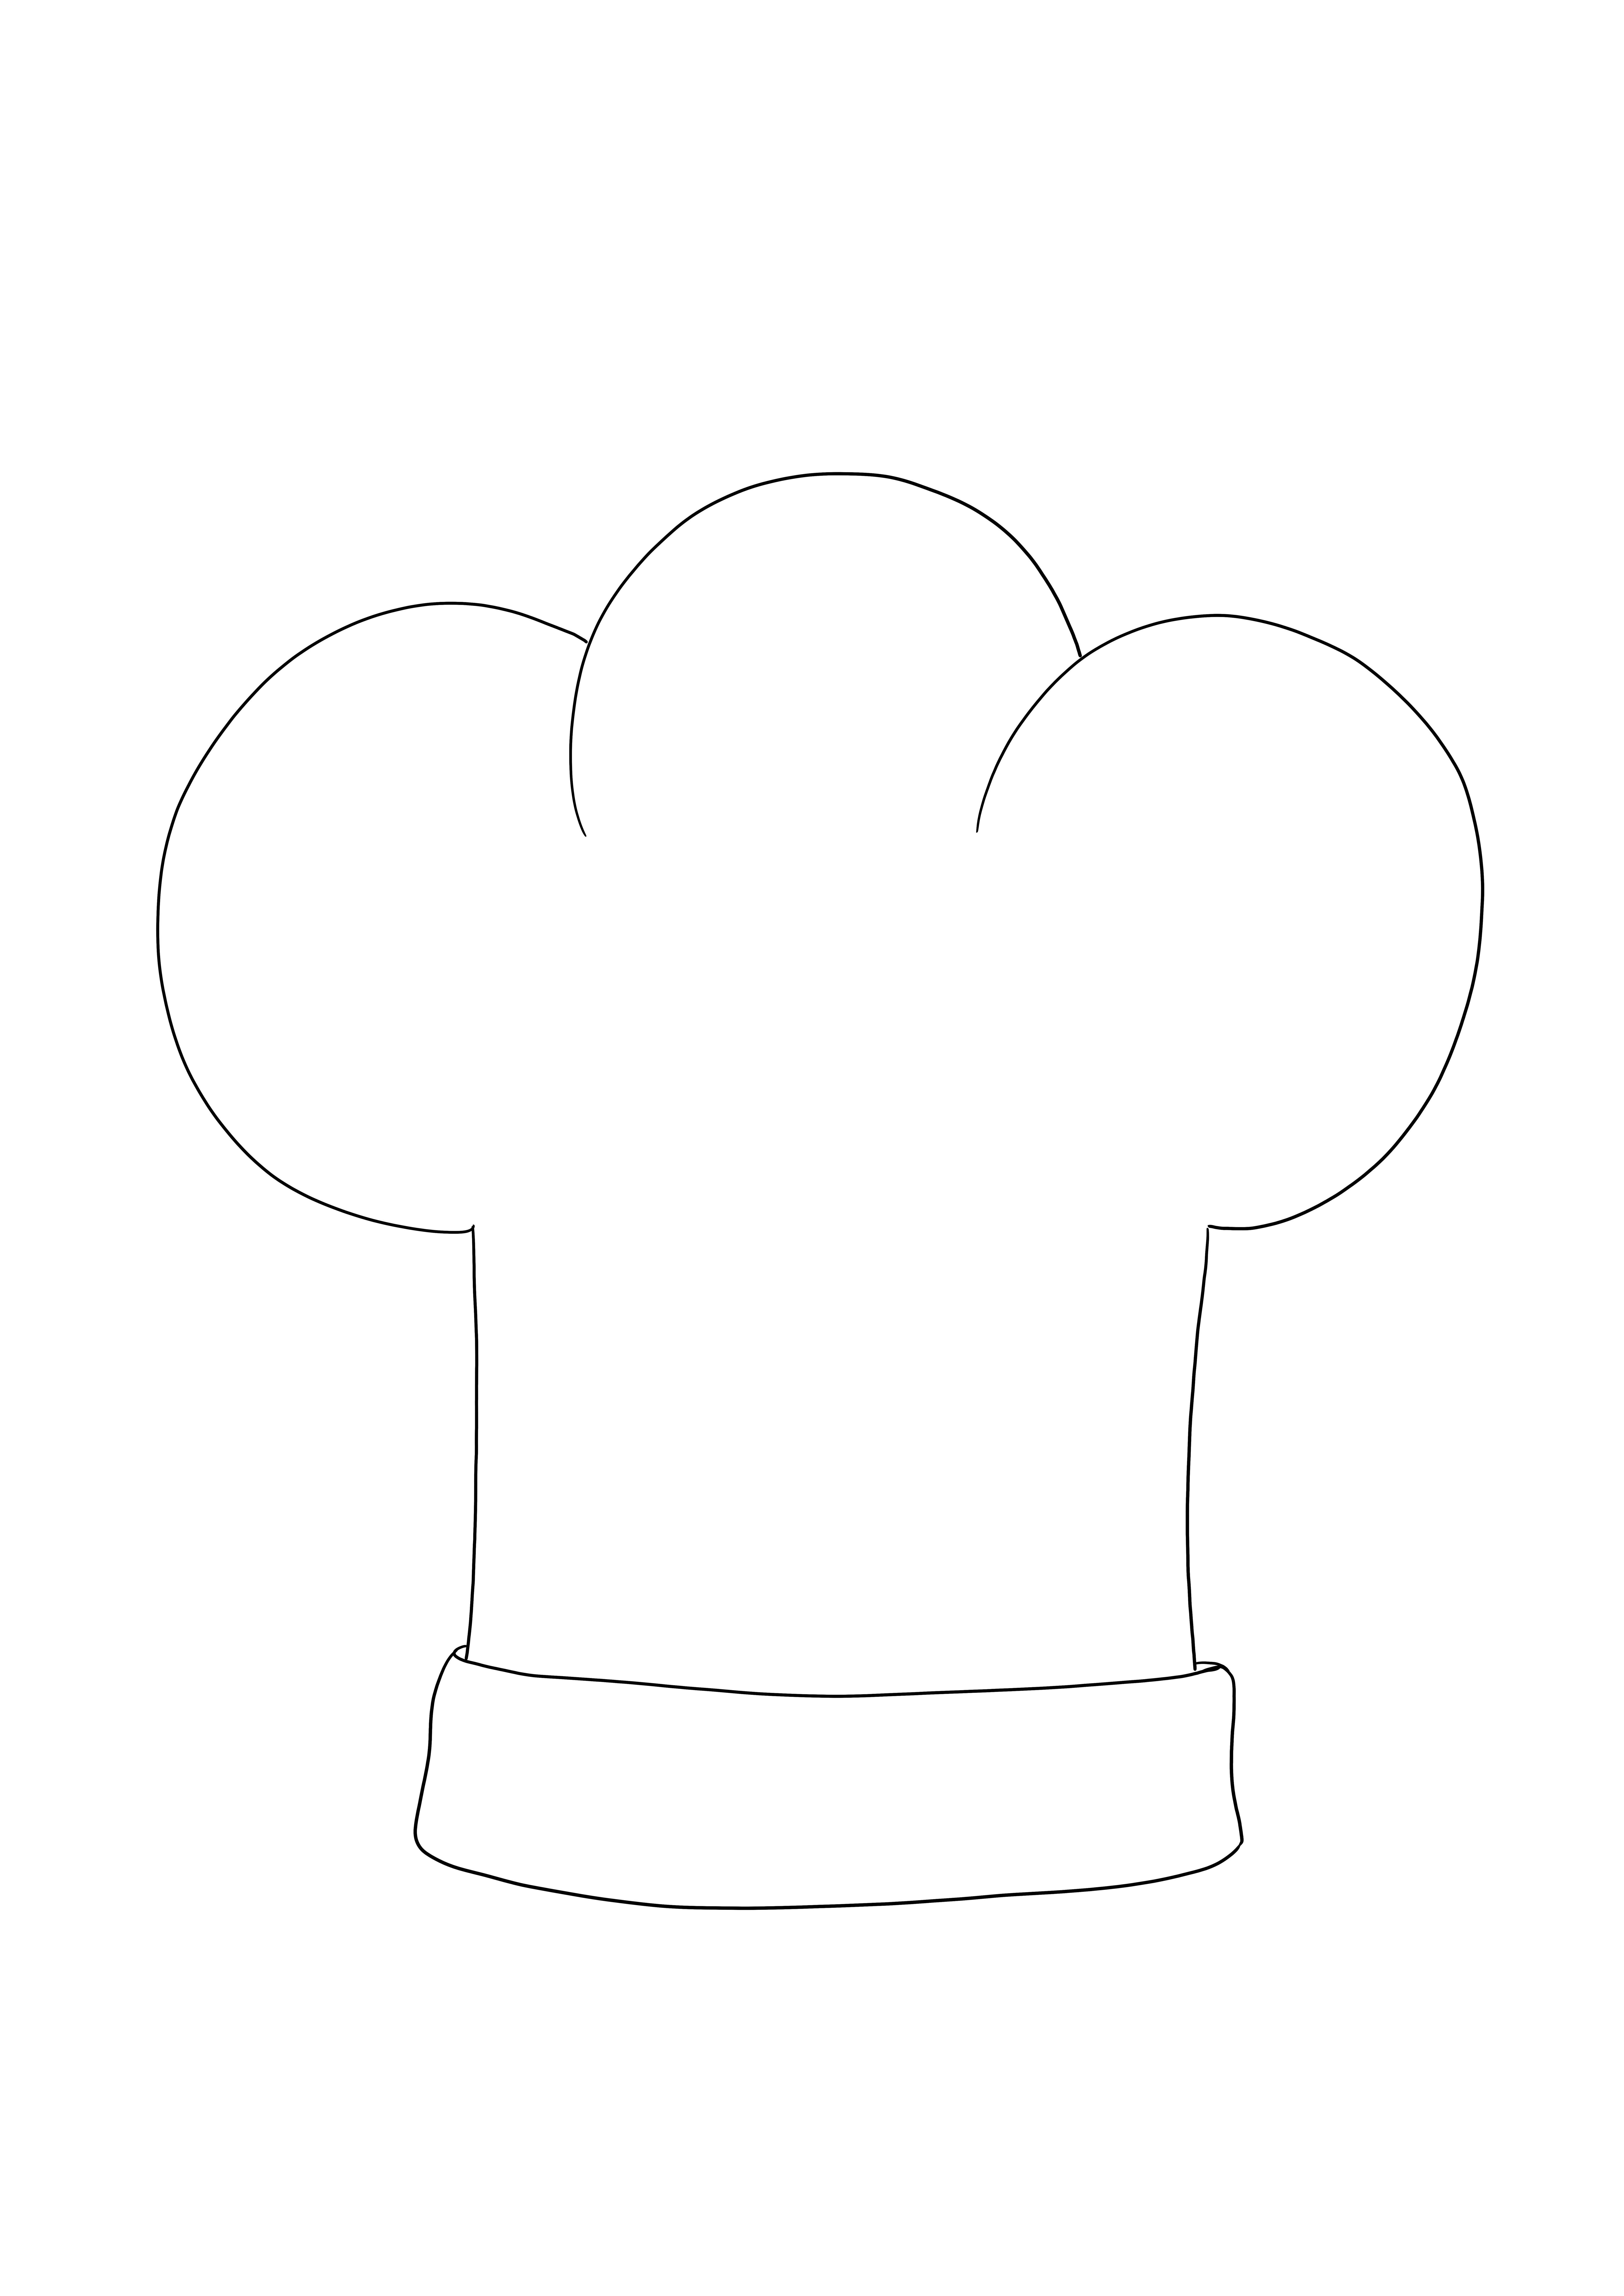 Chef's Hat ücretsiz yazdırılabilir ve boyama görseli - meslekler hakkında bilgi edinmenin harika bir yolu